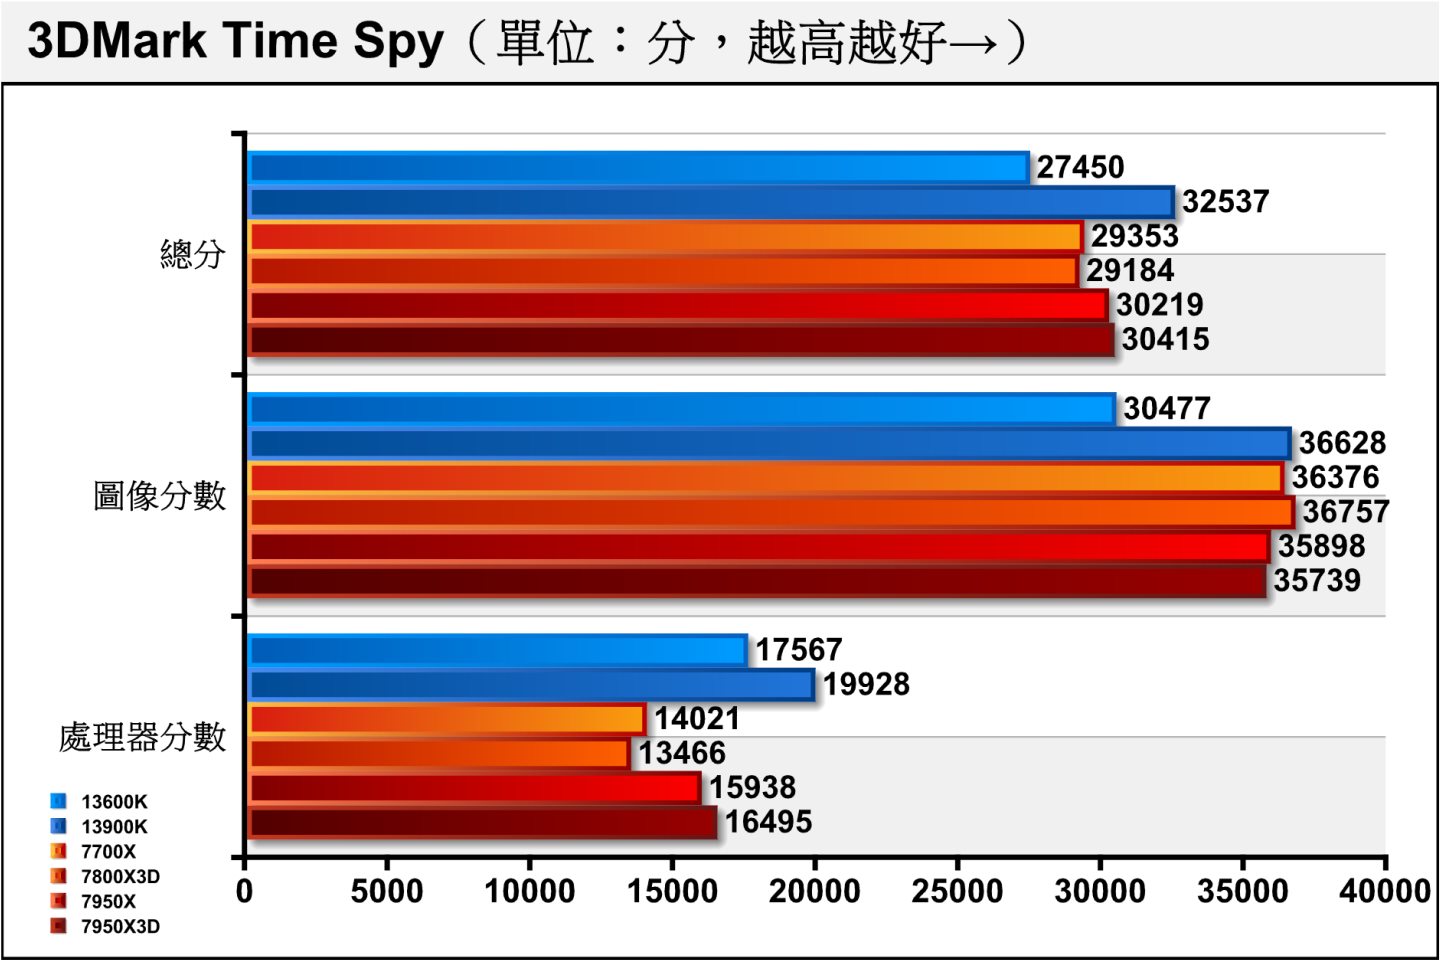 效能測試軟體3DMark的Time Spy項目使用Direct X 12繪圖配2K（2560 x 1440）解析度，7800X3D與7700X的總分表現相當接近，而7800X3D可能因時脈較低而在處理器分數比較吃虧。